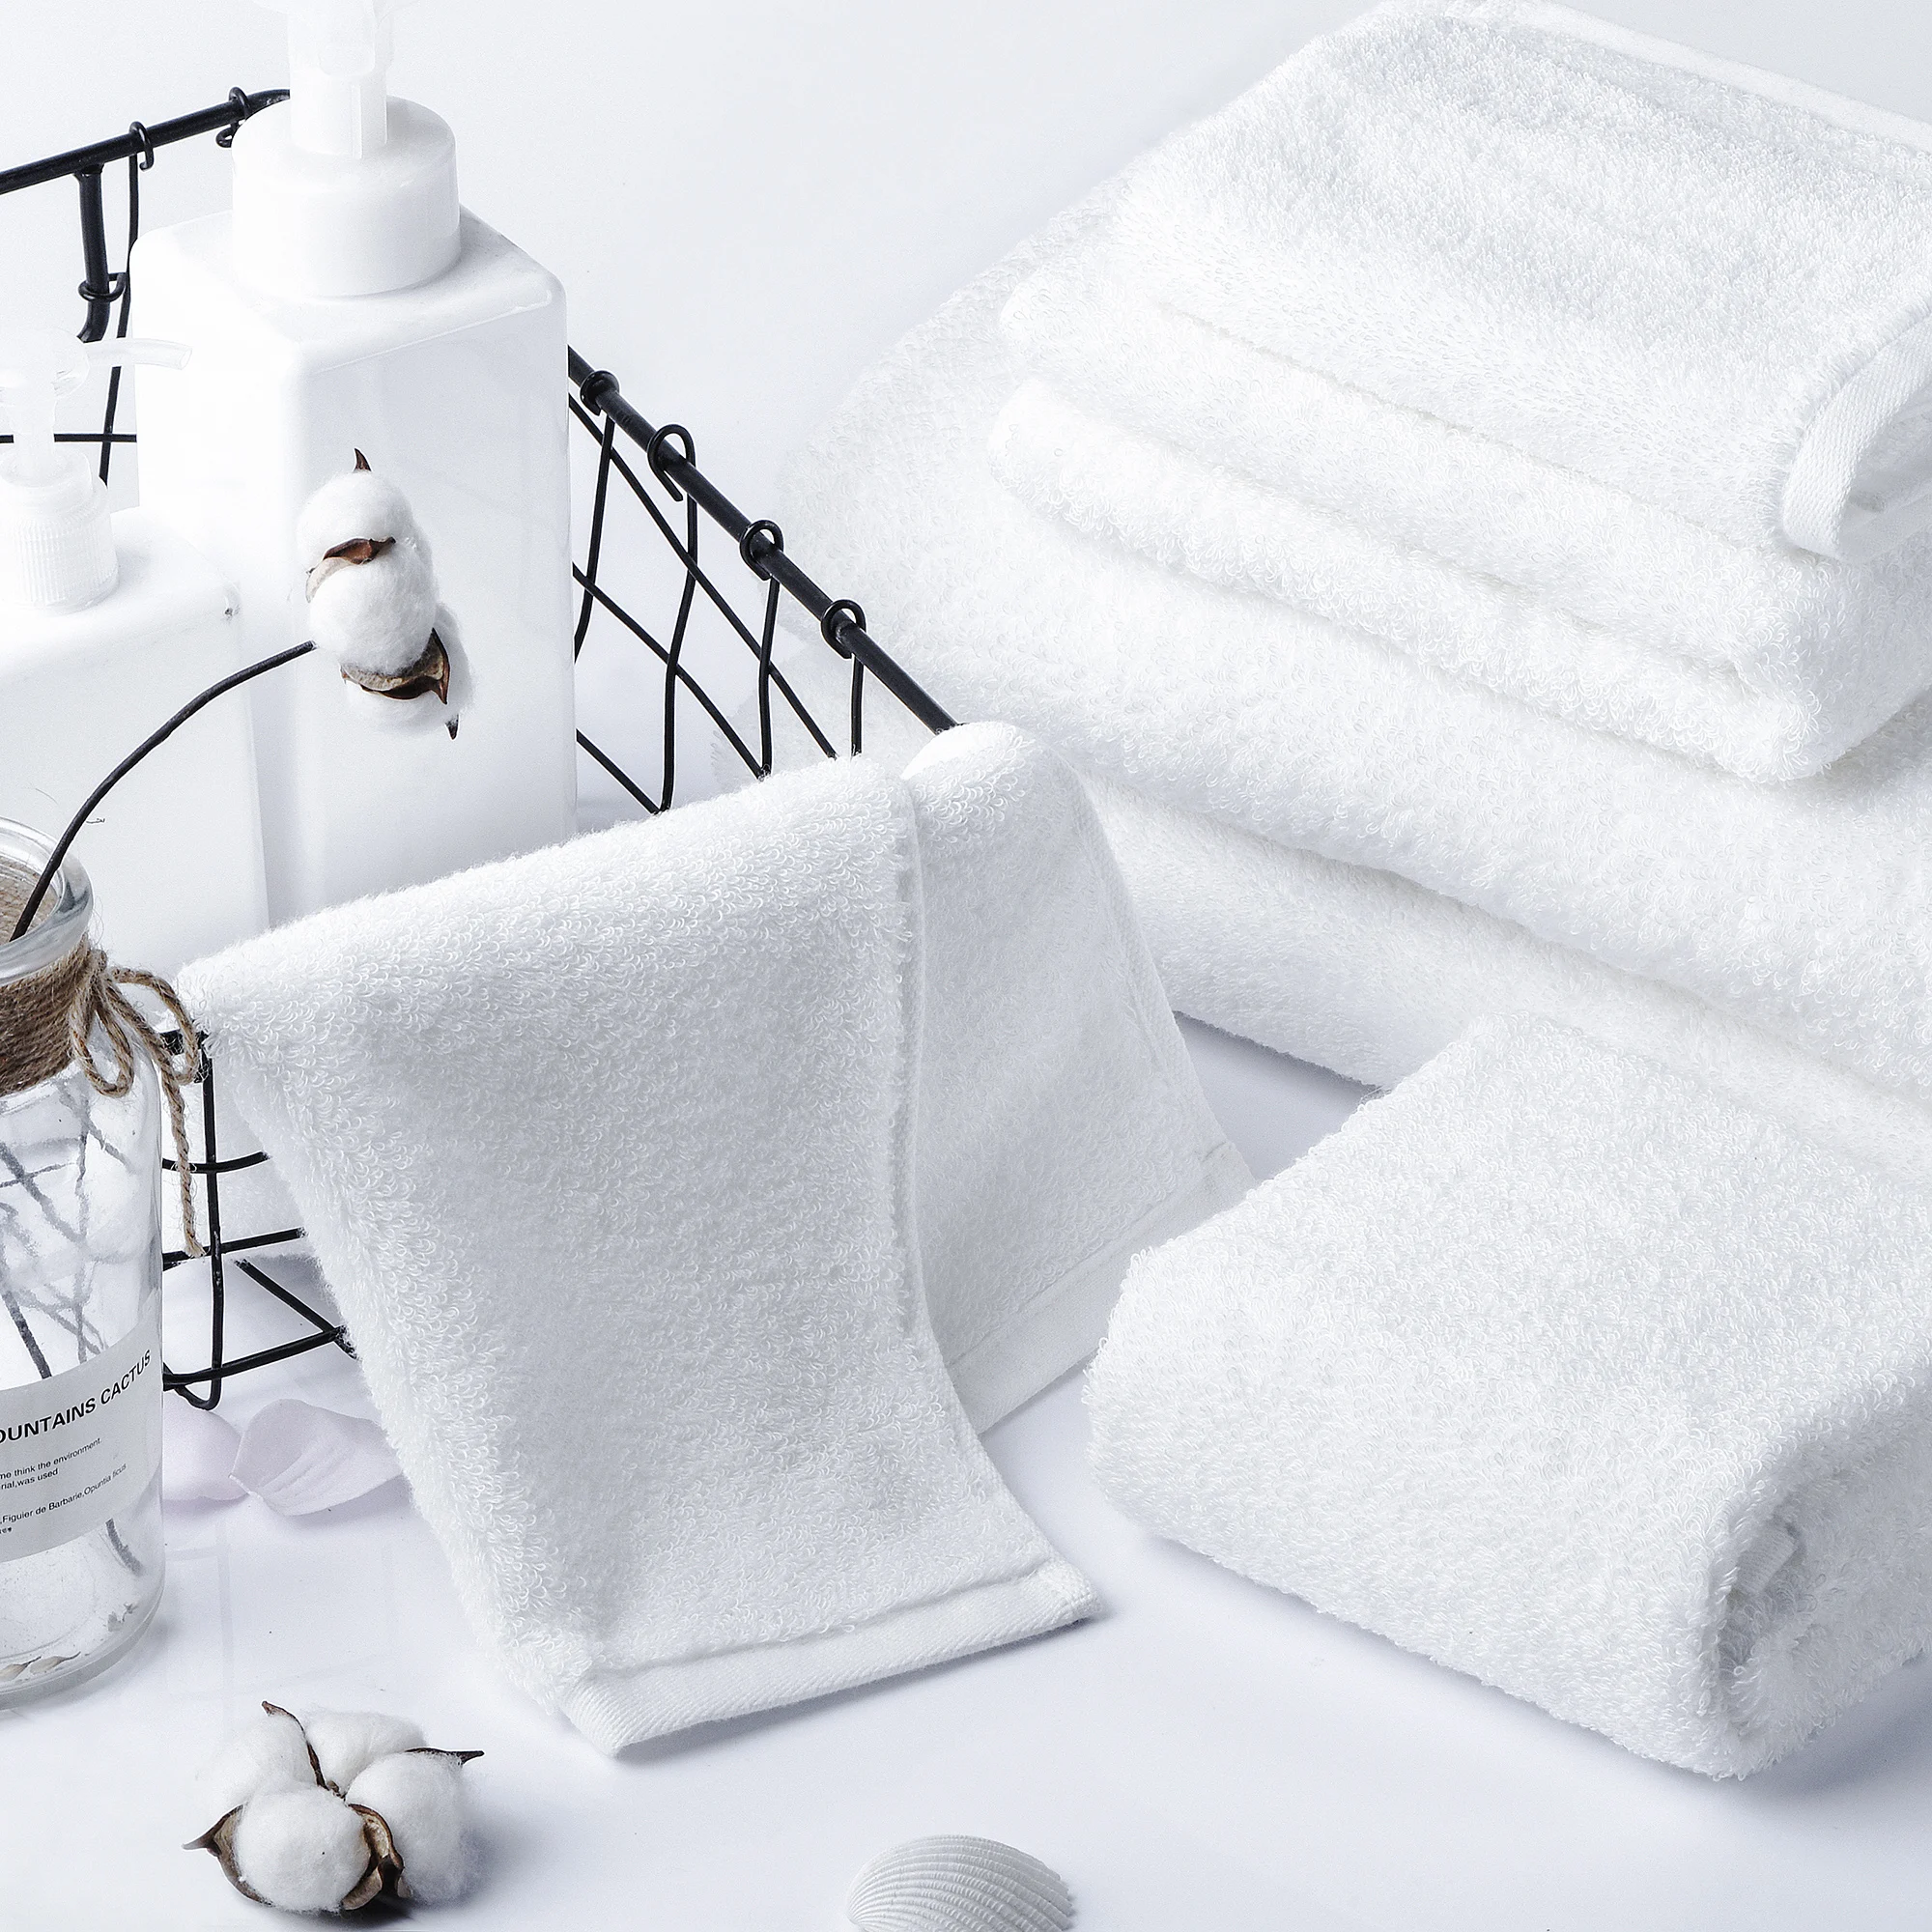 https://ae01.alicdn.com/kf/S874eb51d36c043179471ee987017b1c48/SEMAXE-Luxury-Bath-Towel-Set-2-Large-Bath-Towels-2-Hand-Towels-2-Face-towels-Cotton.jpg